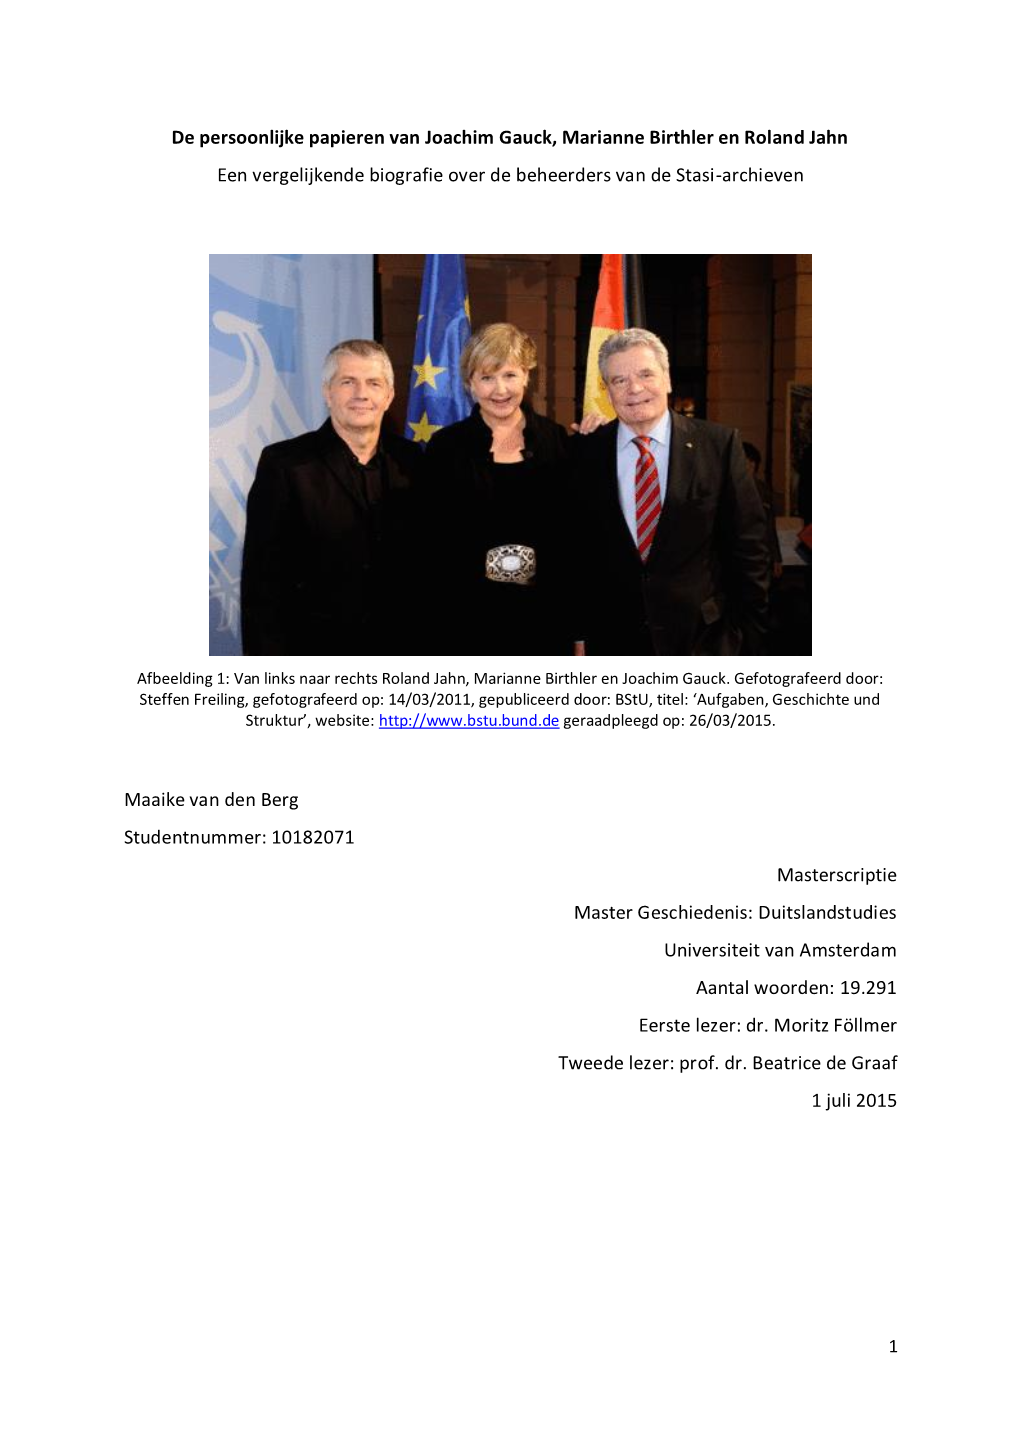 De Persoonlijke Papieren Van Joachim Gauck, Marianne Birthler En Roland Jahn Een Vergelijkende Biografie Over De Beheerders Van De Stasi-Archieven